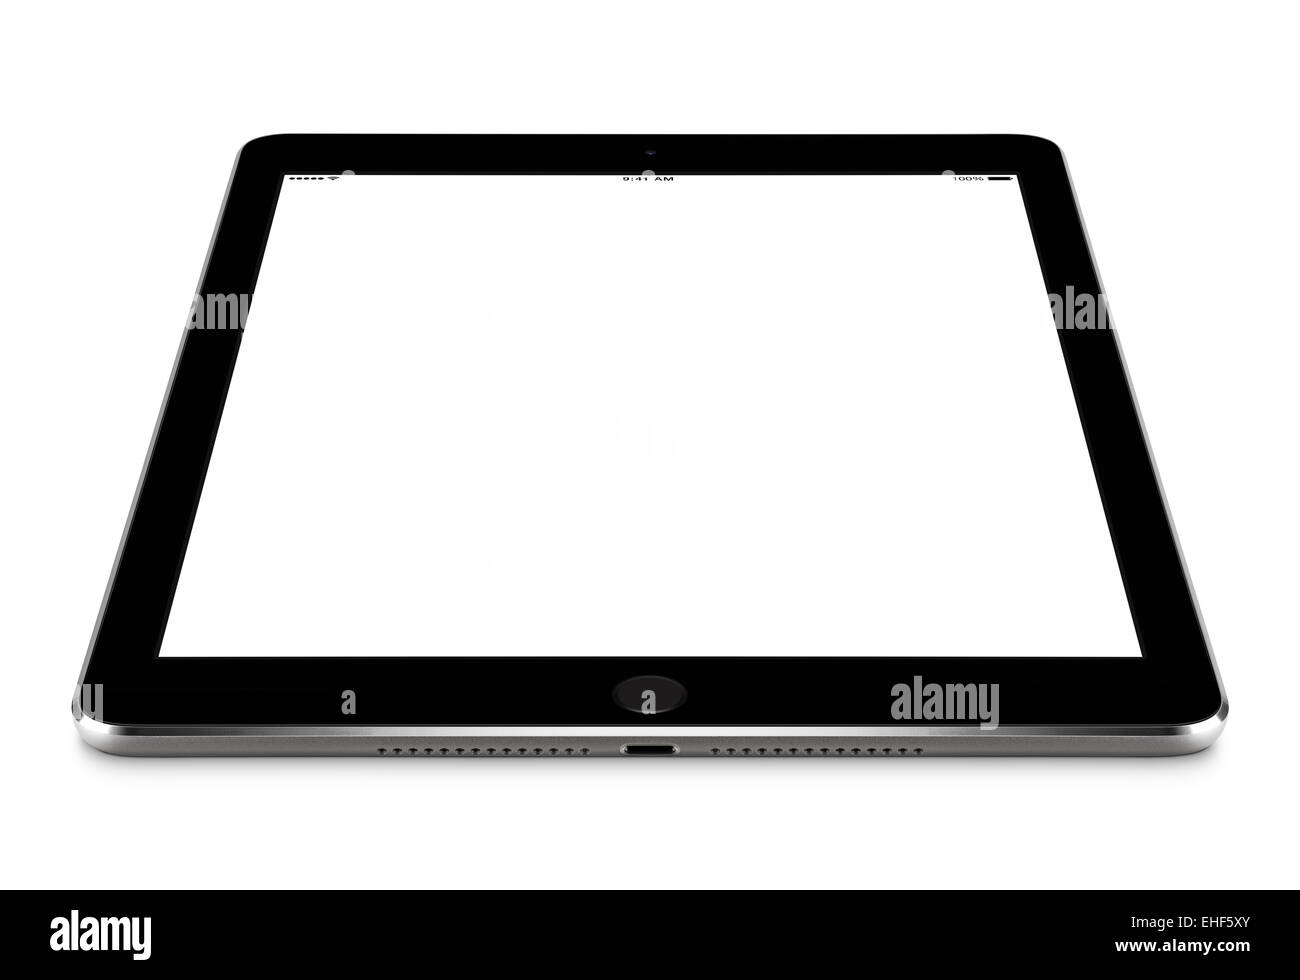 Abgewinkelt, Vorderansicht des schwarzen Tablet-Computer mit Bildschirm-Mock-up auf der Oberfläche, isoliert auf weißem Hintergrund. Stockfoto